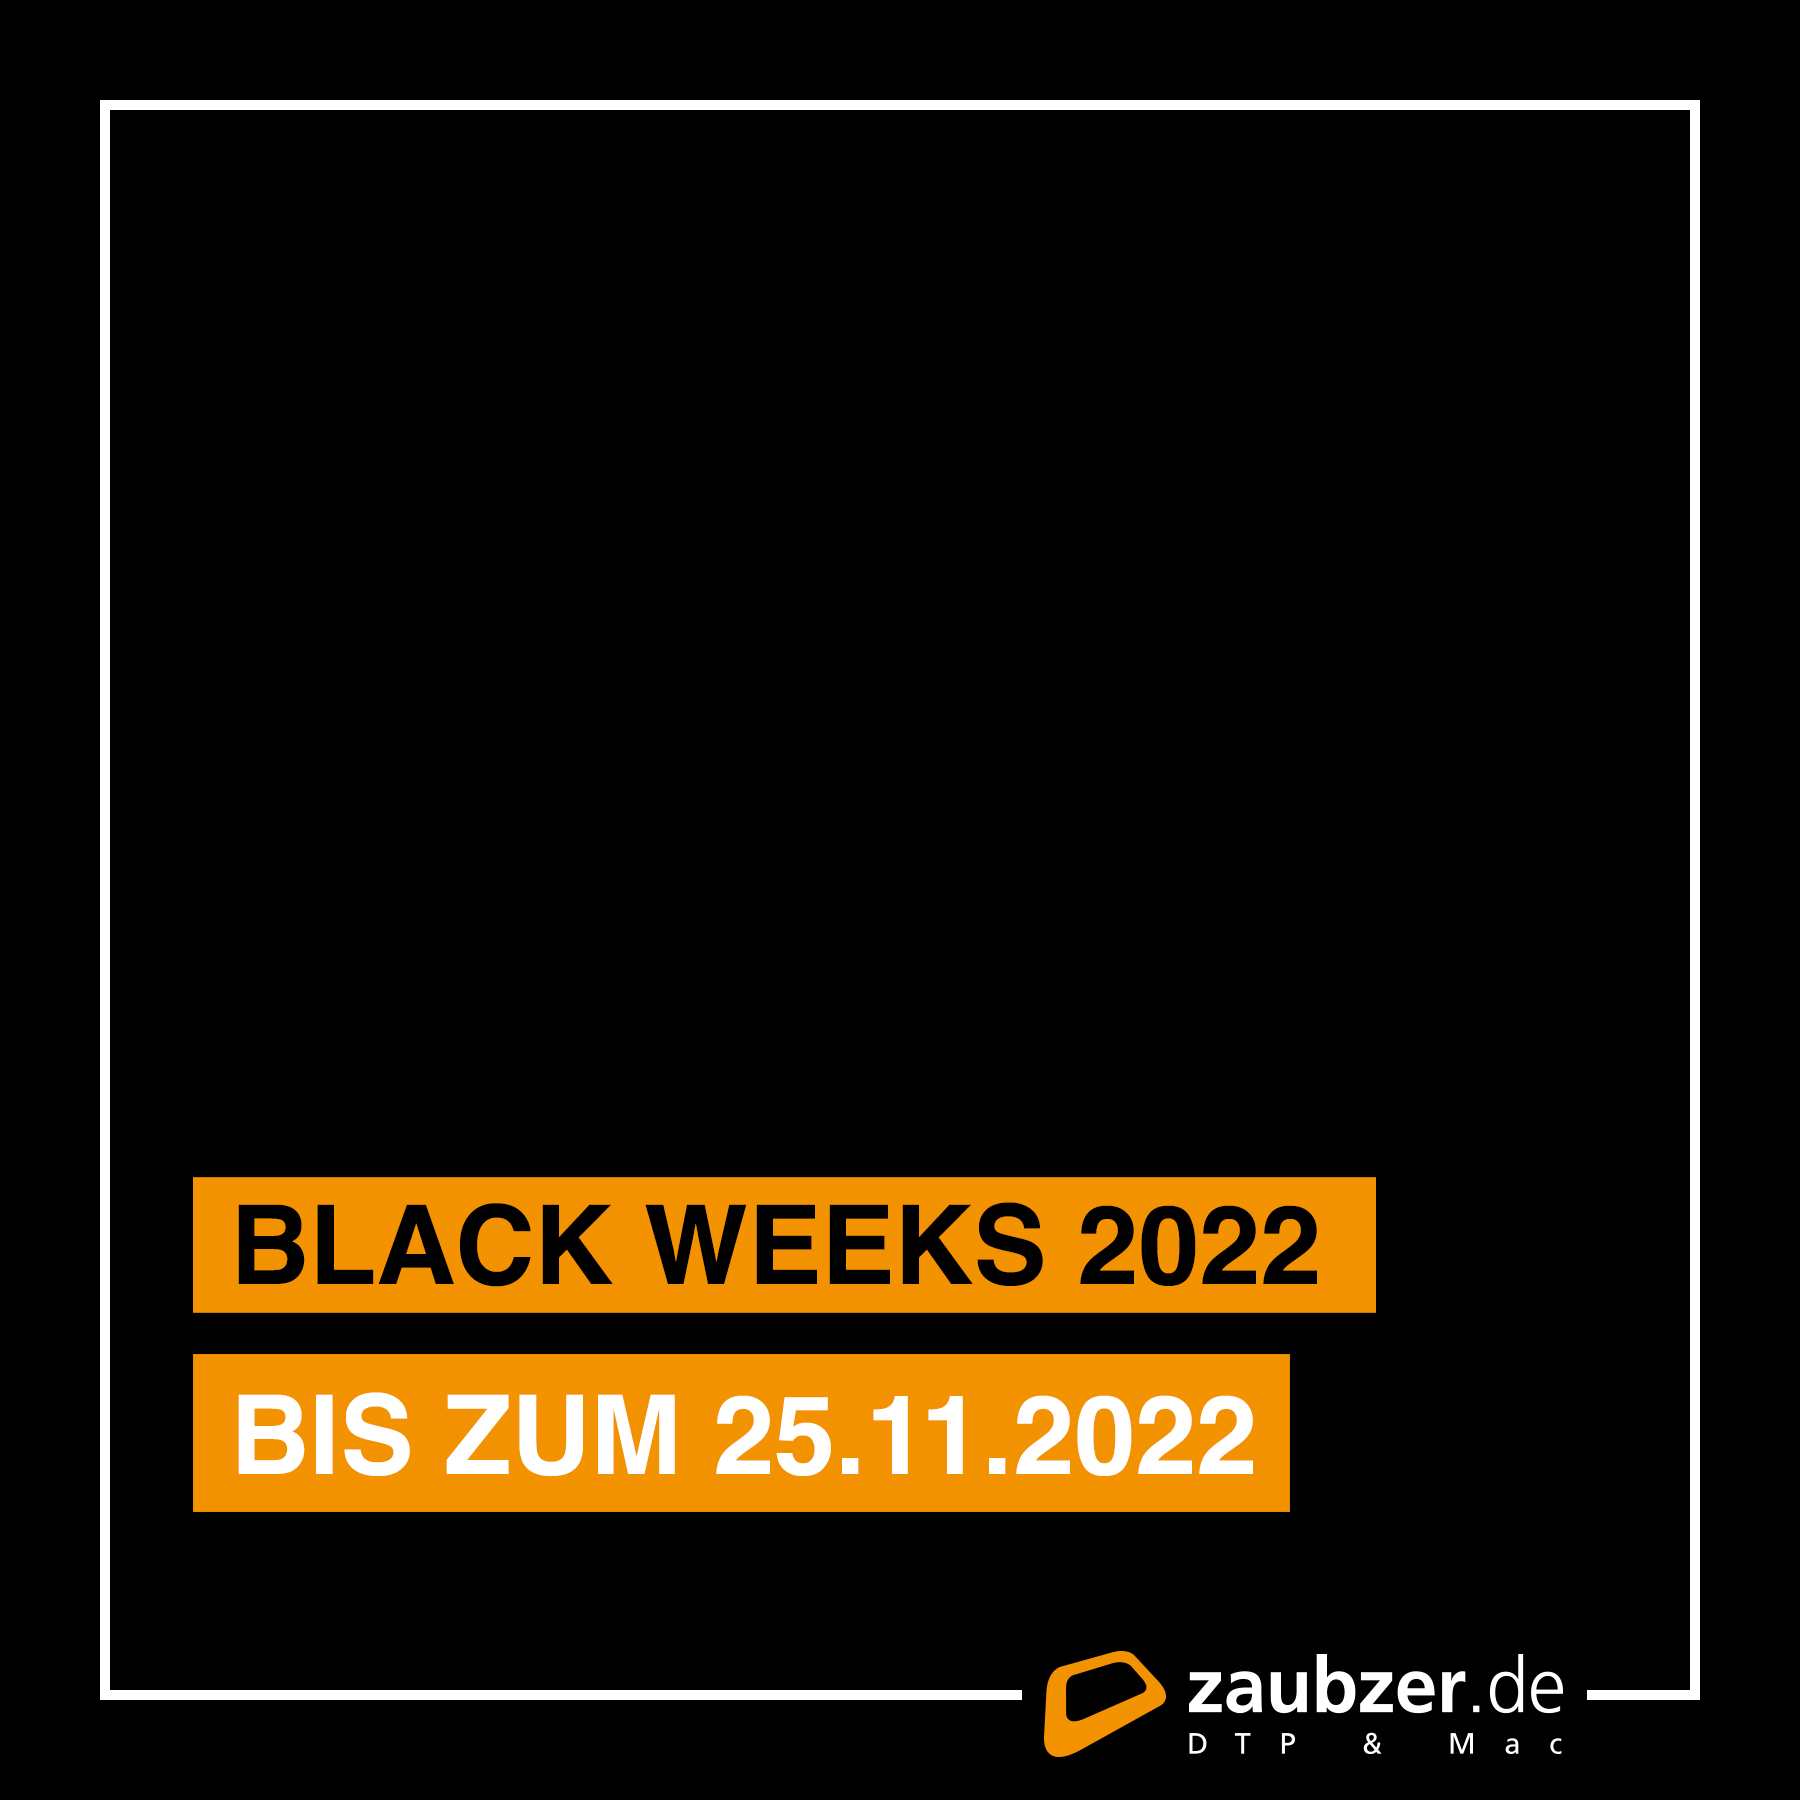 Black Weeks 2022 - zaubzer.de